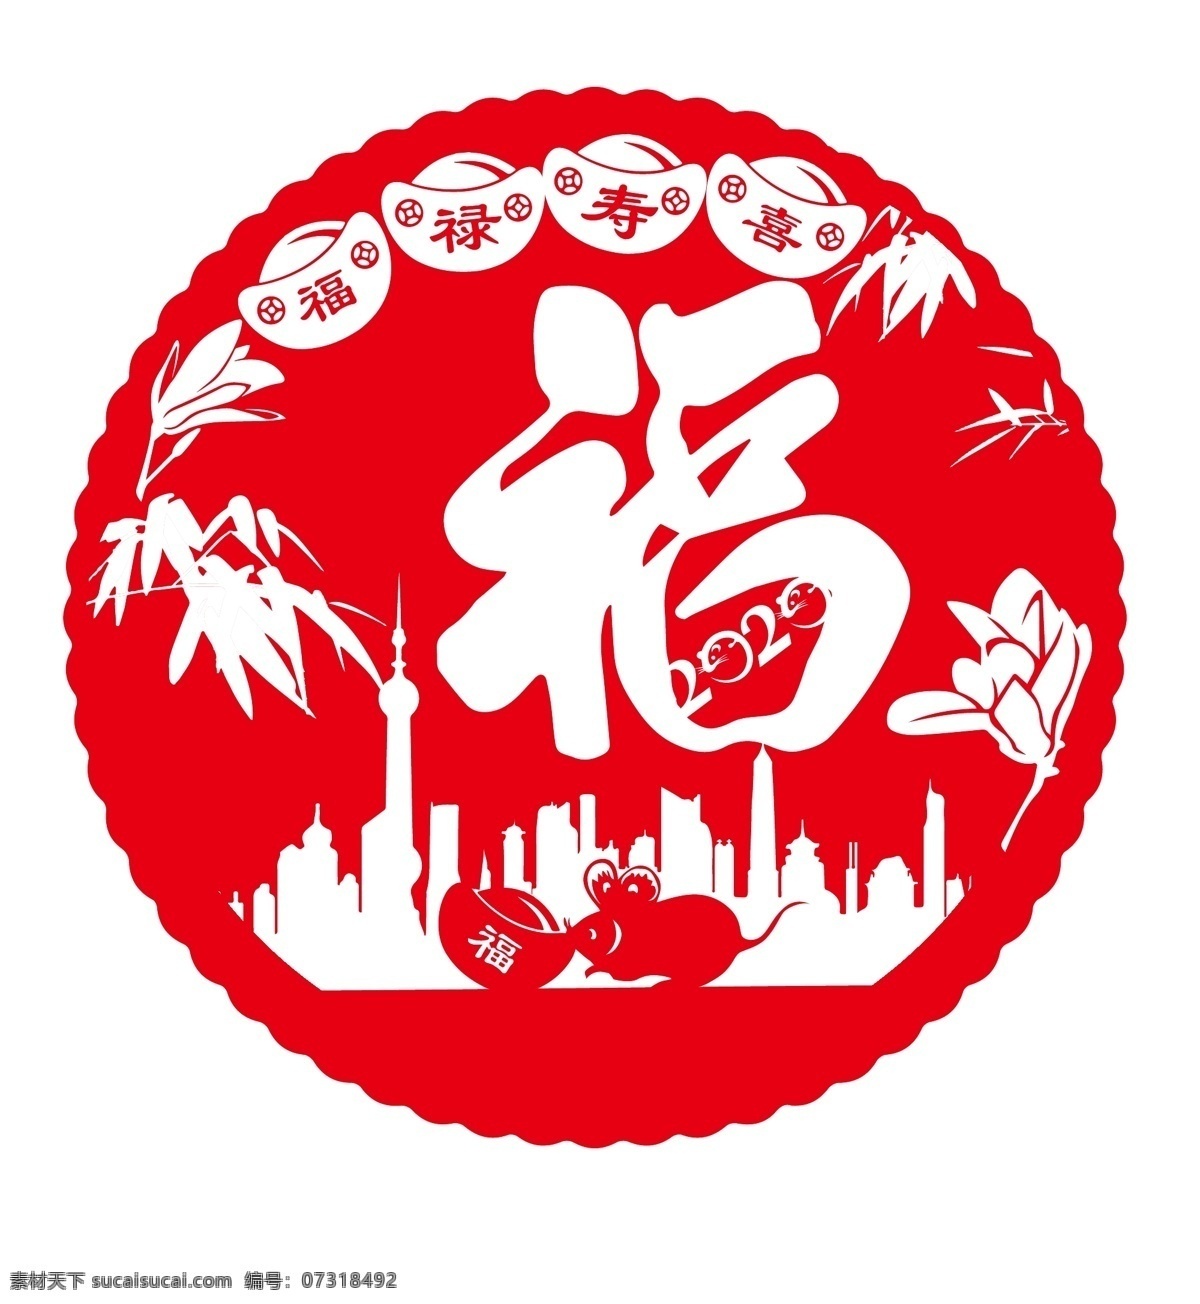 窗花剪纸 福字 金元宝 老鼠 上海建筑剪影 竹子 兰花 文化艺术 传统文化